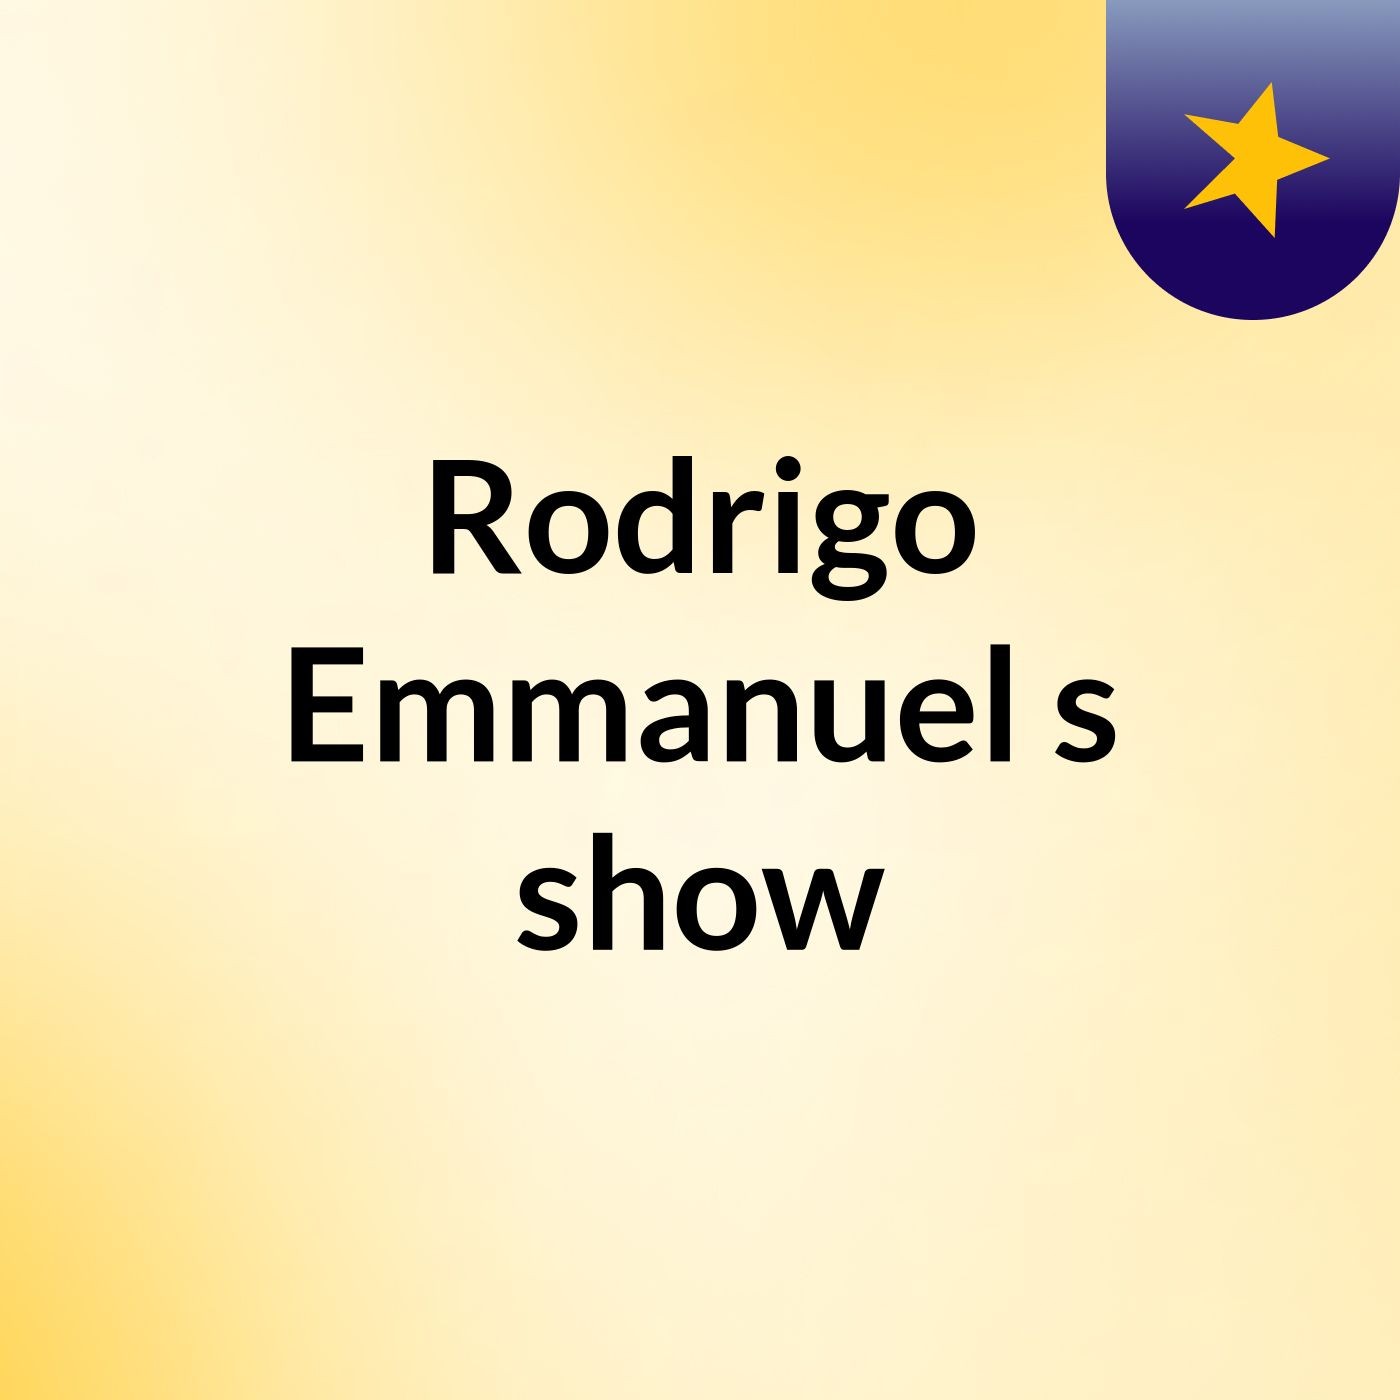 Rodrigo Emmanuel's show